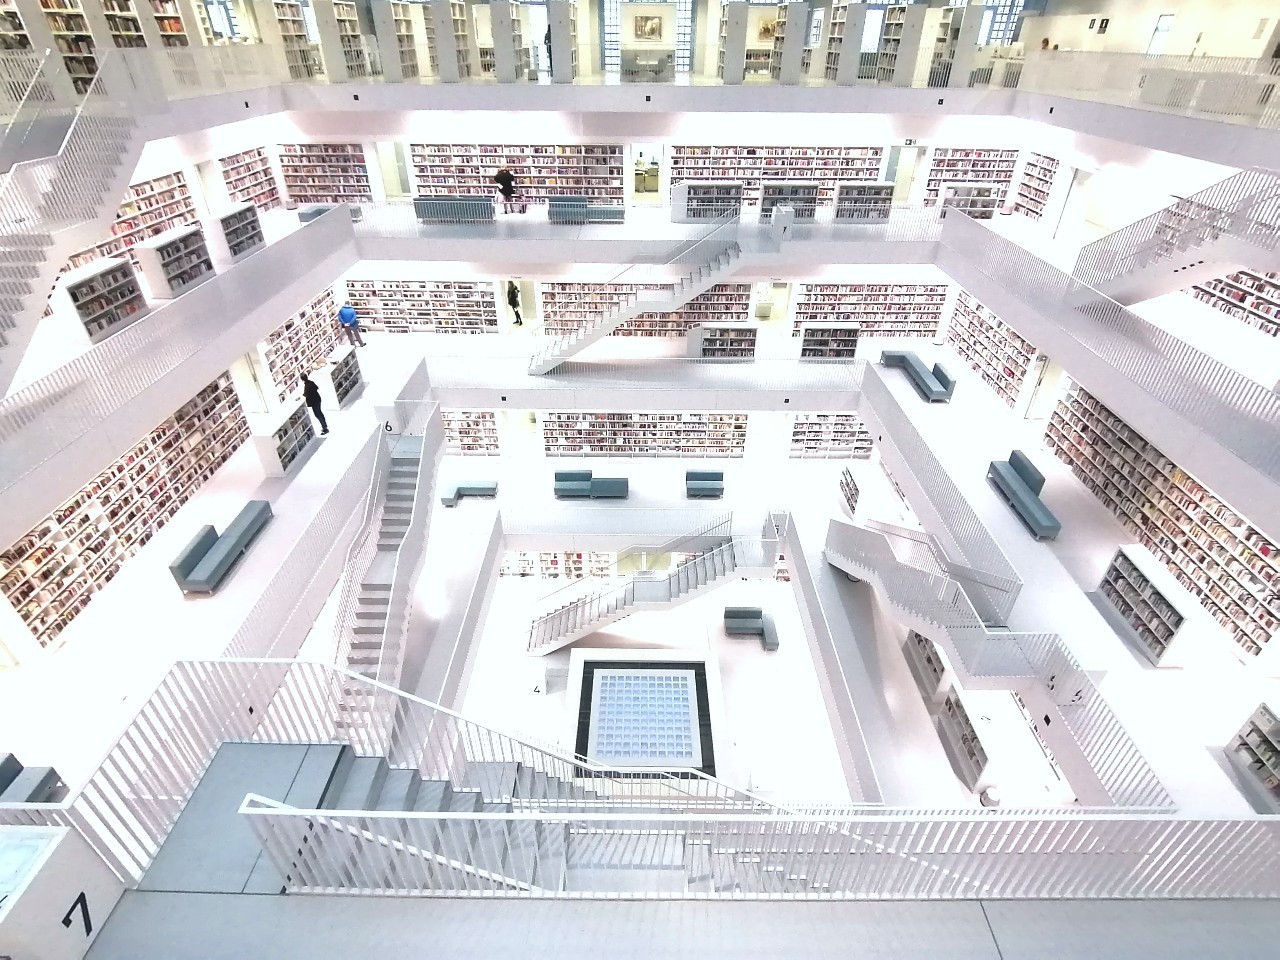 ヨーロッパの美しい図書館その9　シュトゥットガルト市立図書館　【ドイツ】